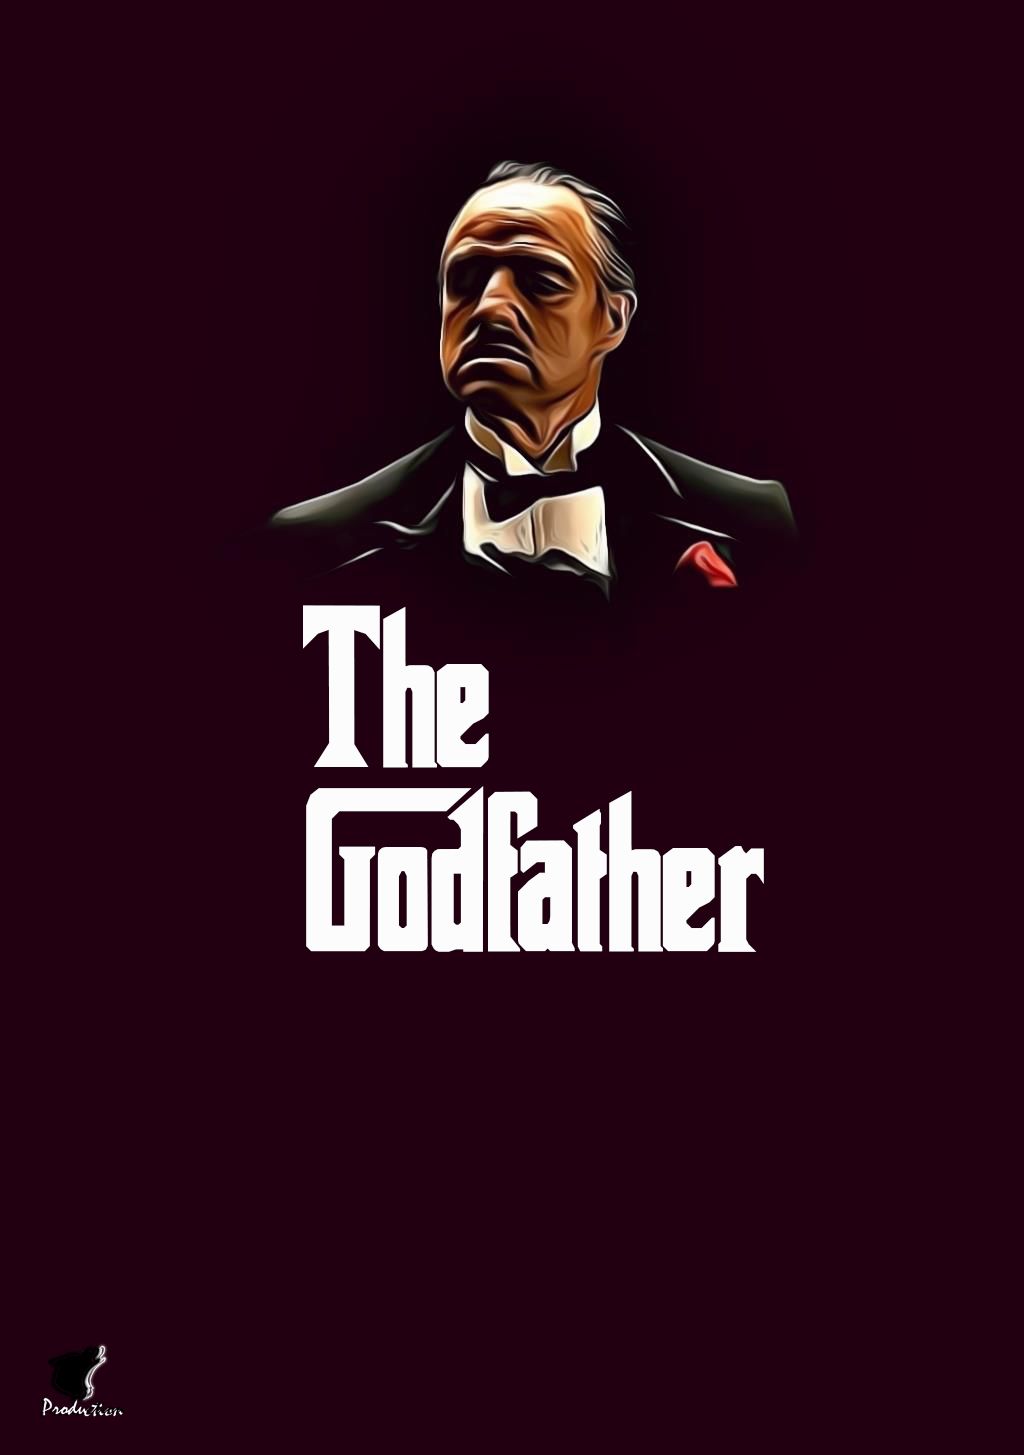 The Godfather Hintergrundbild 1024x1455. The Godfather Lockscreen. The godfather wallpaper, The godfather, The godfather poster